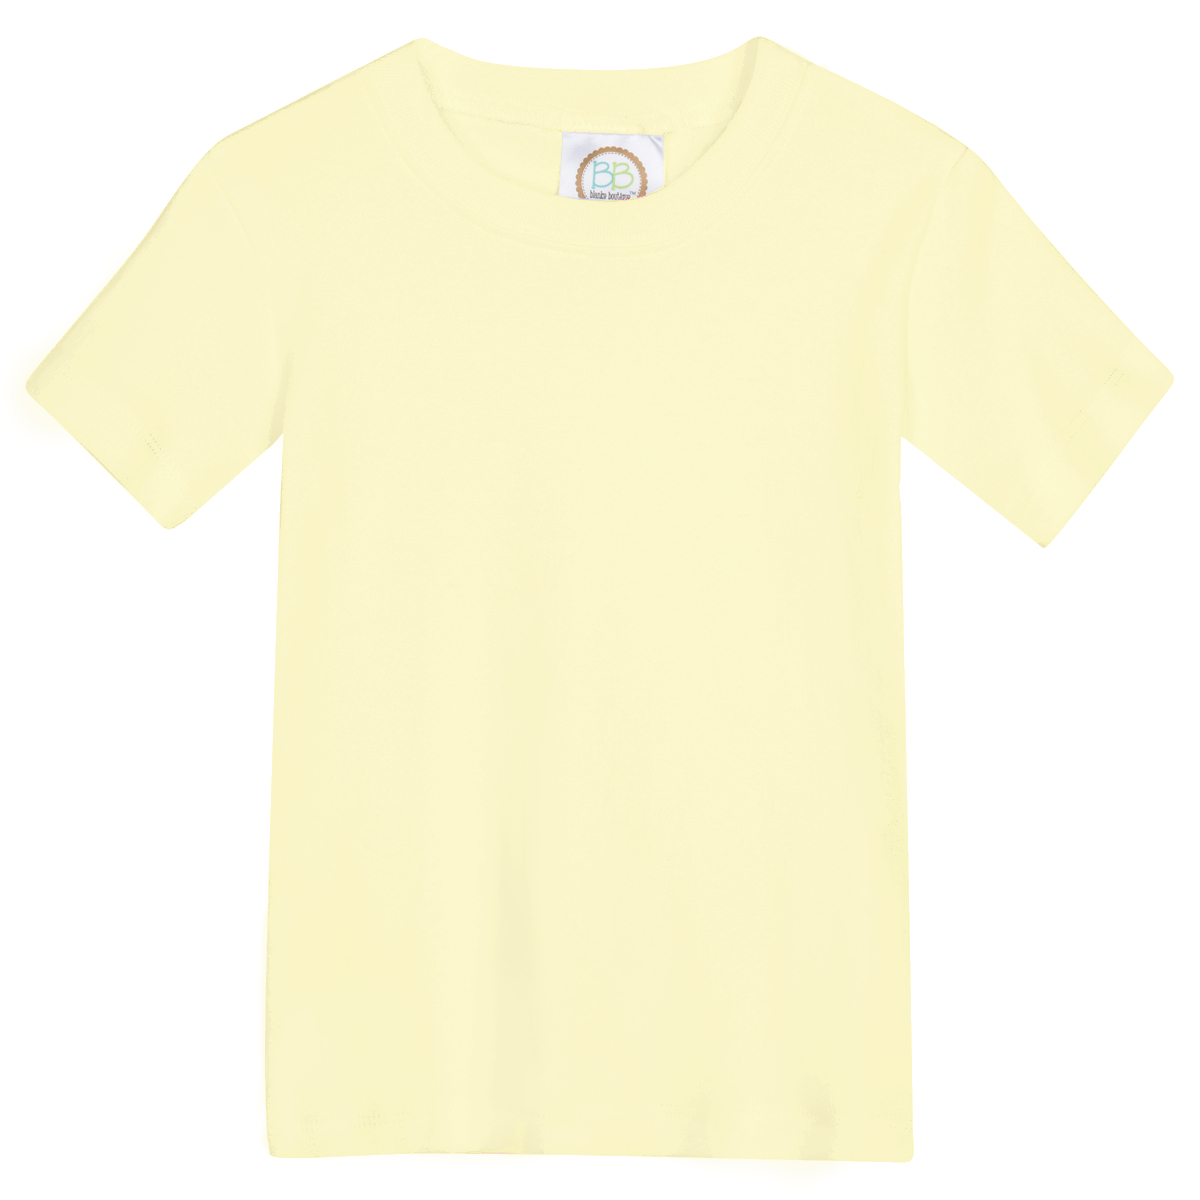 Blank Boy's Short Sleeve Tee Shirt